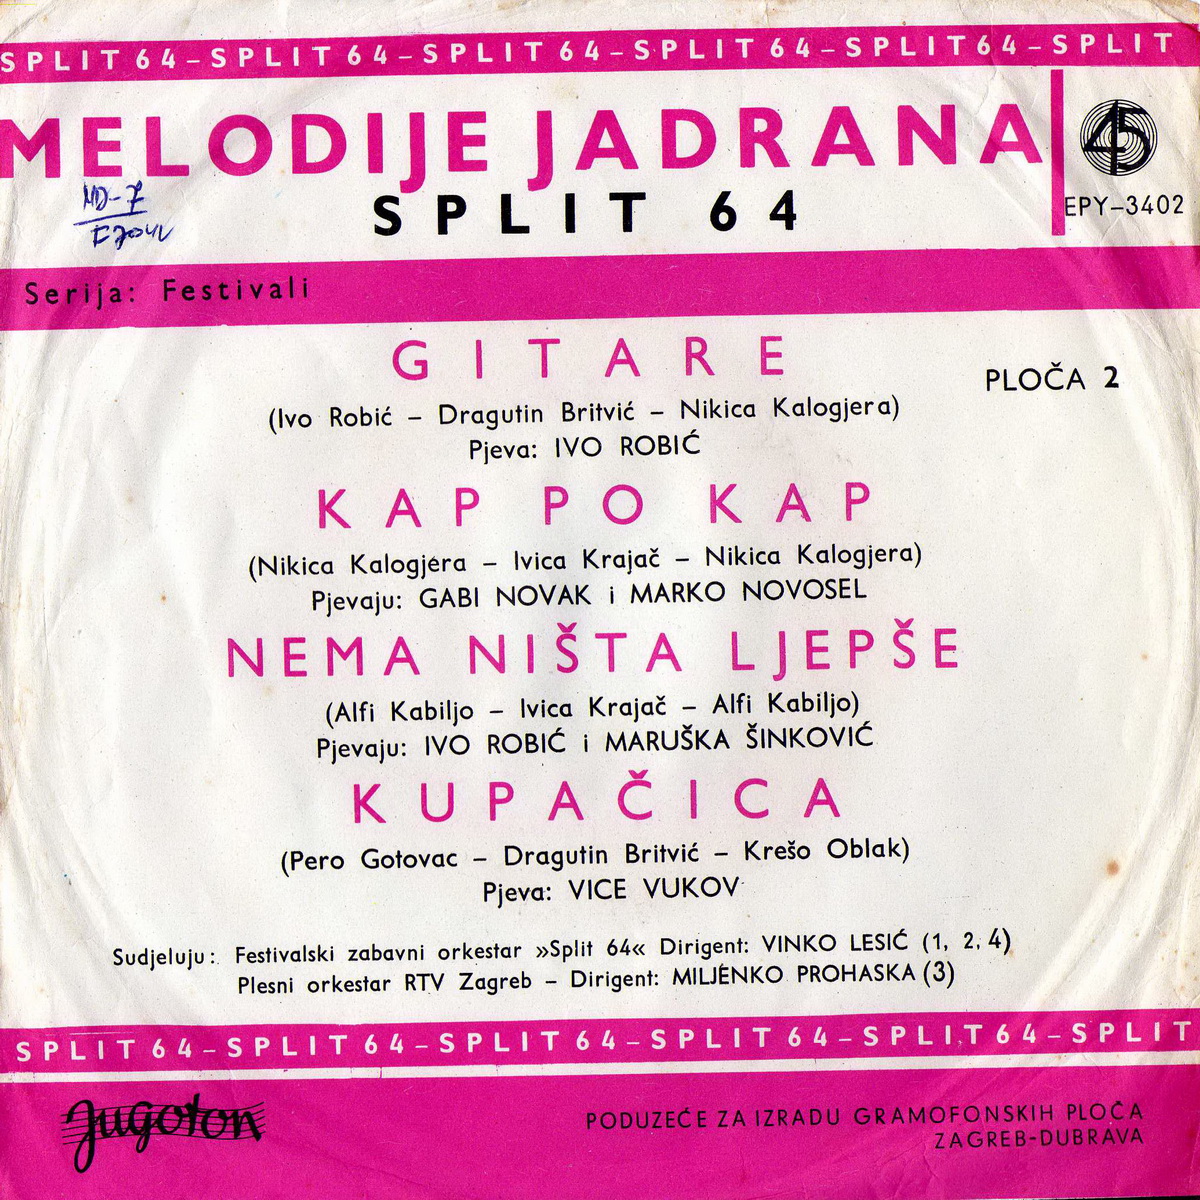 VA 1964 Split 64 Melodije Jadrana EP 2 b